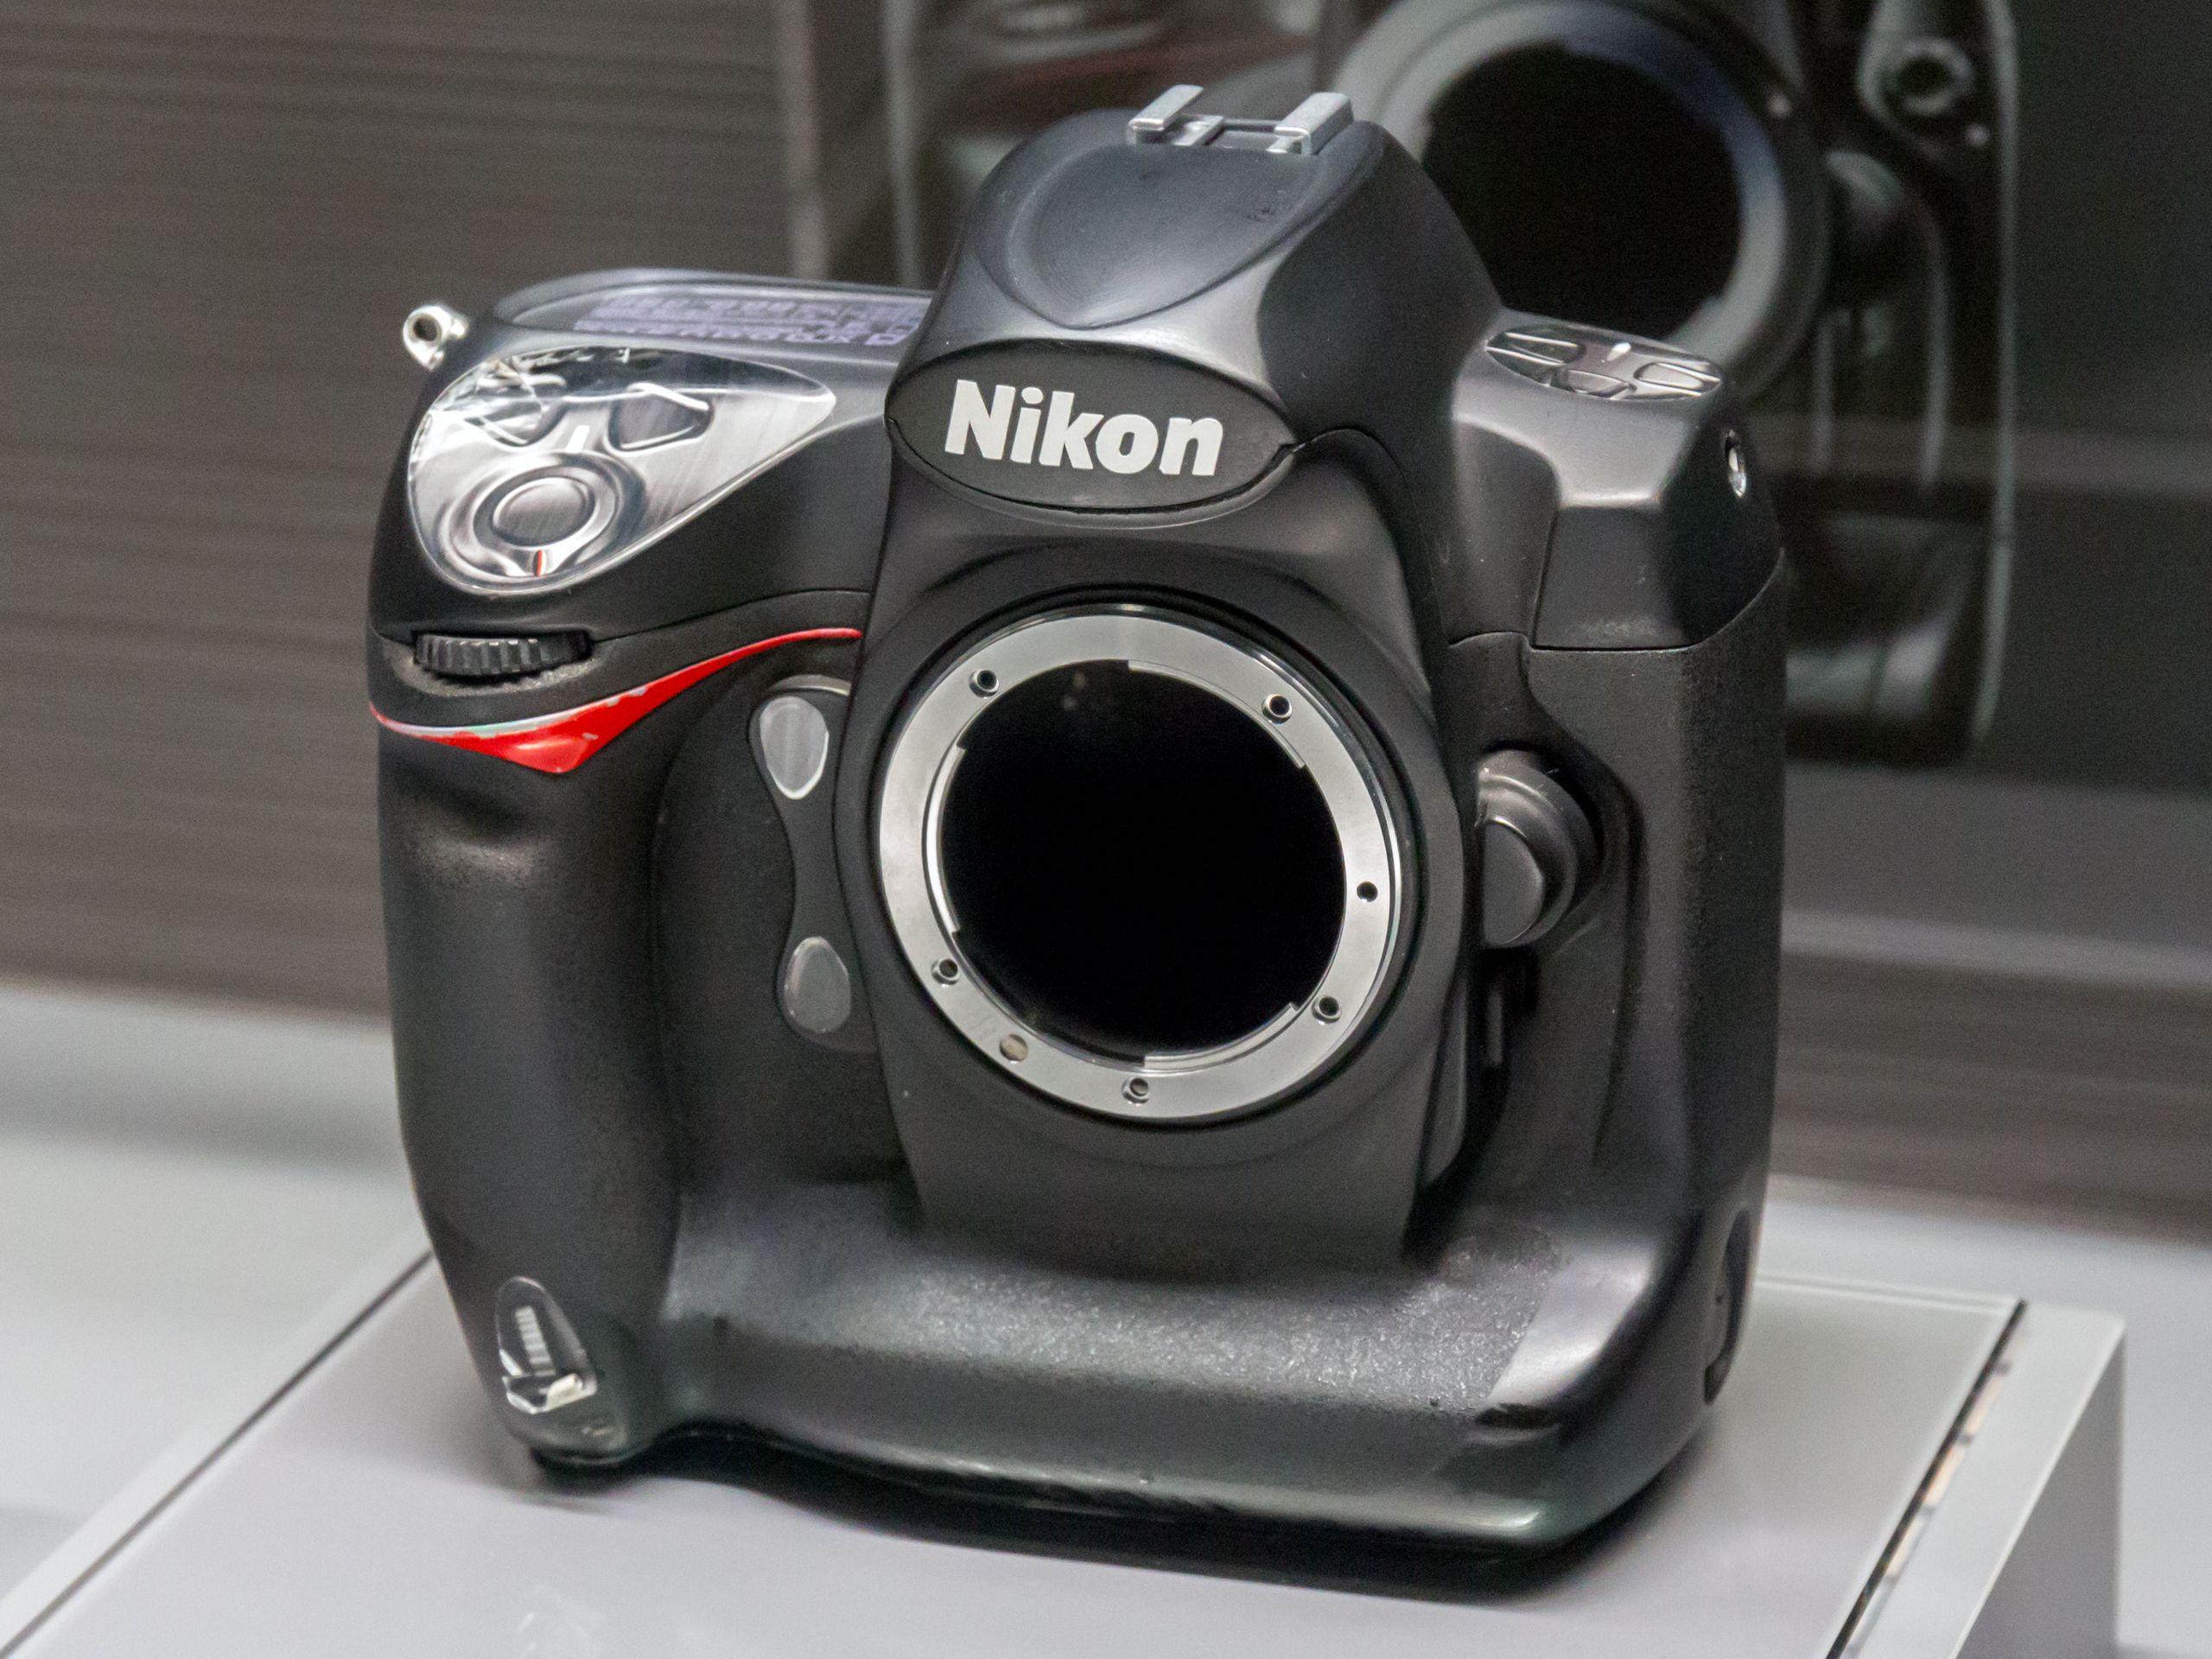 Nikon D3 design study mock-up 2015 Nikon Museum